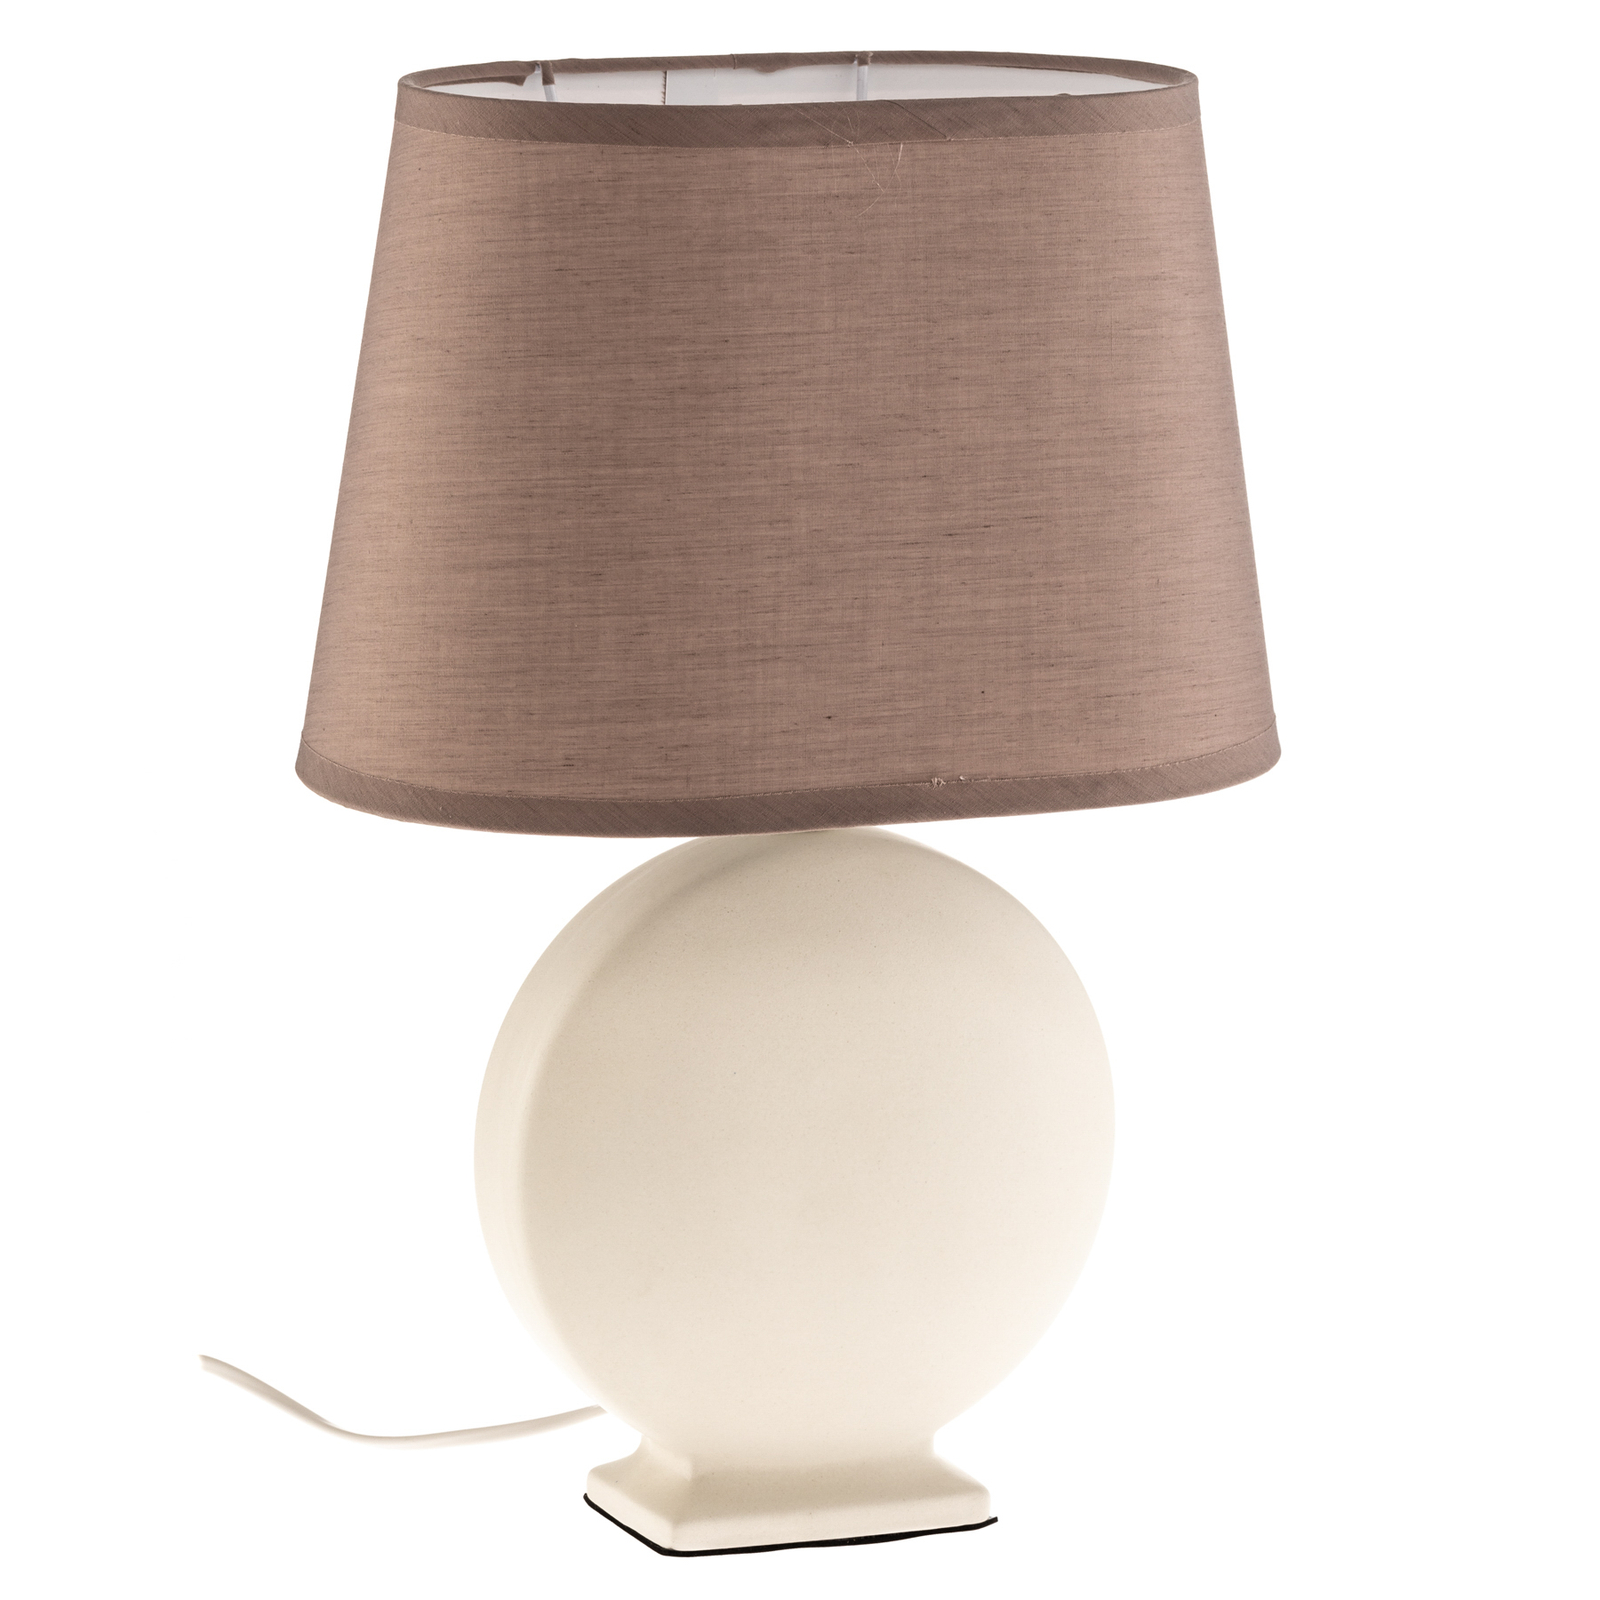 Lampa stołowa Zen, klosz beżowy, ceramika, 46cm